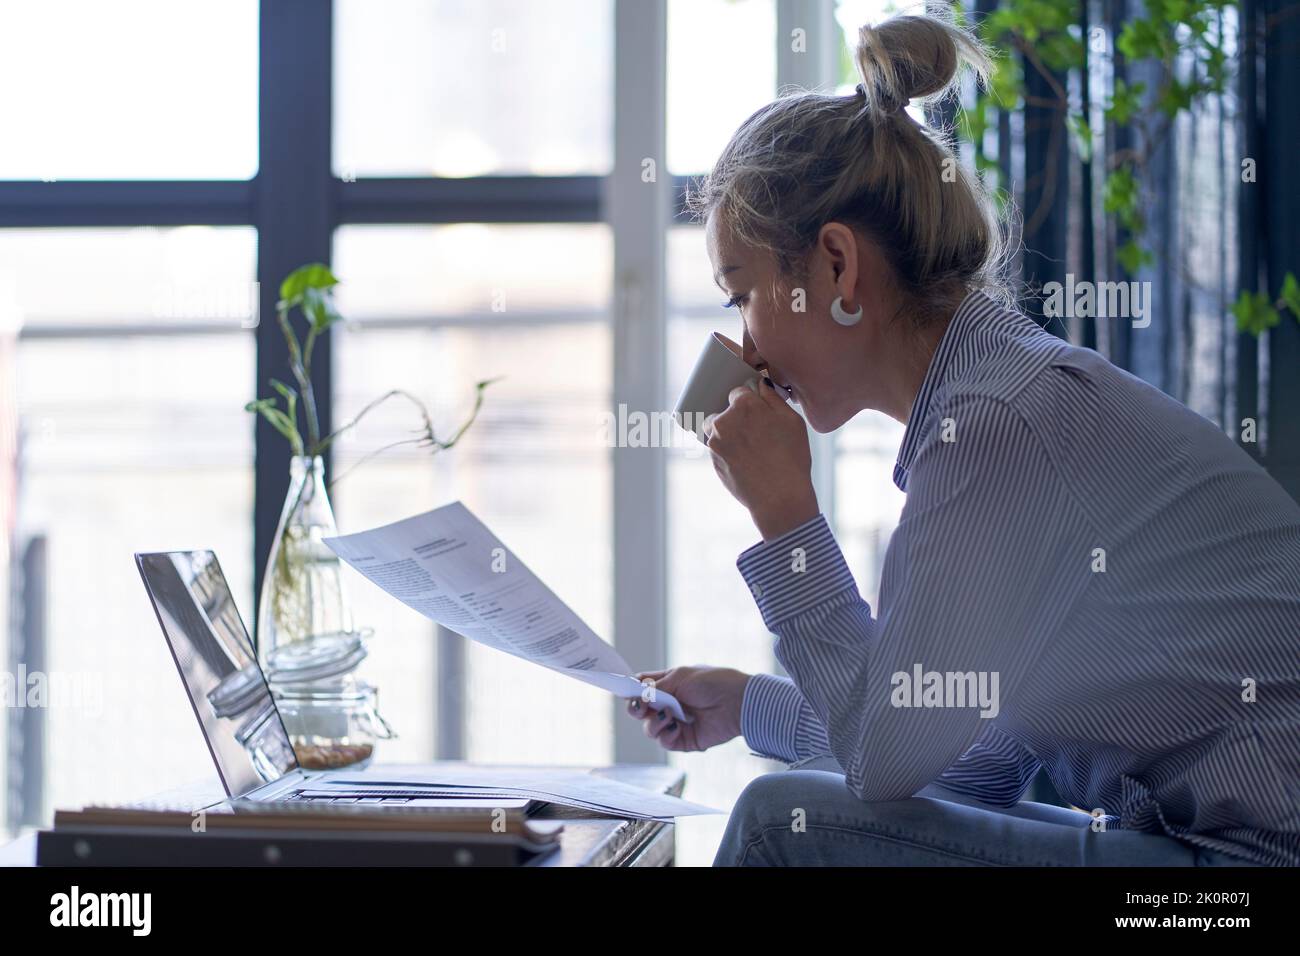 femme asiatique professionnelle mature travaillant à domicile à l'aide d'un ordinateur portable tout en regardant un document papier, vue latérale Banque D'Images